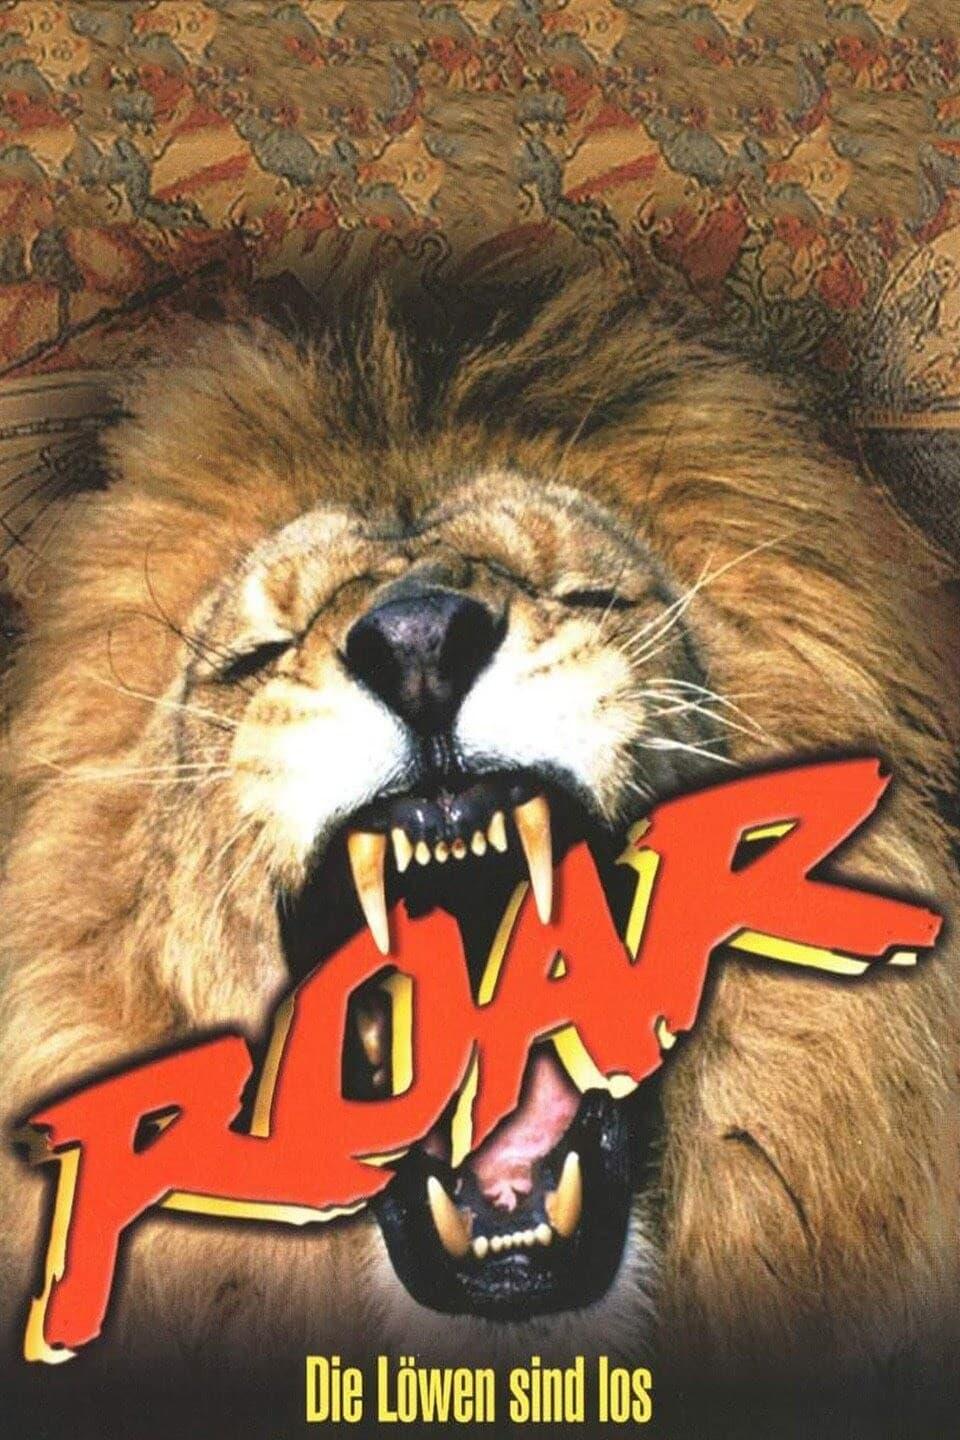 Roar - Die Löwen sind los poster